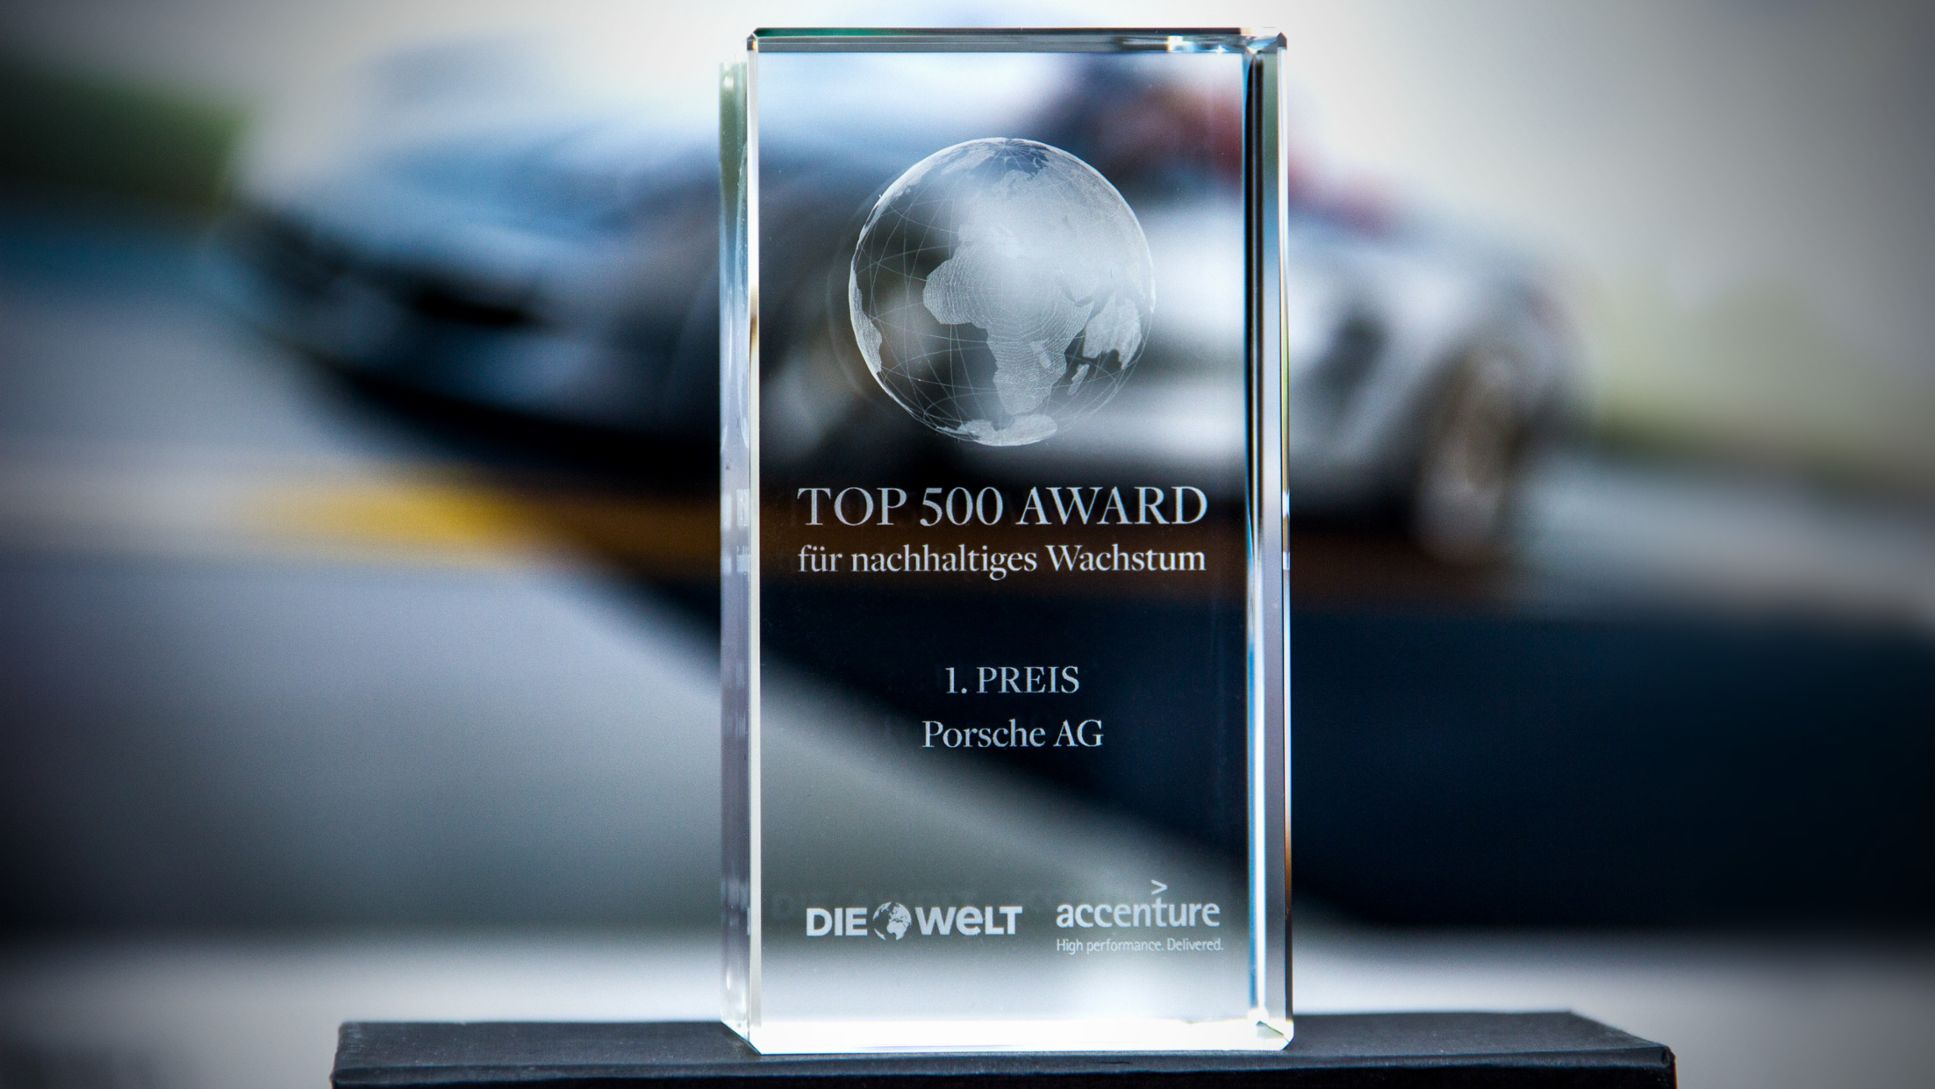 Top-500-Award, Porsche AG, 2015